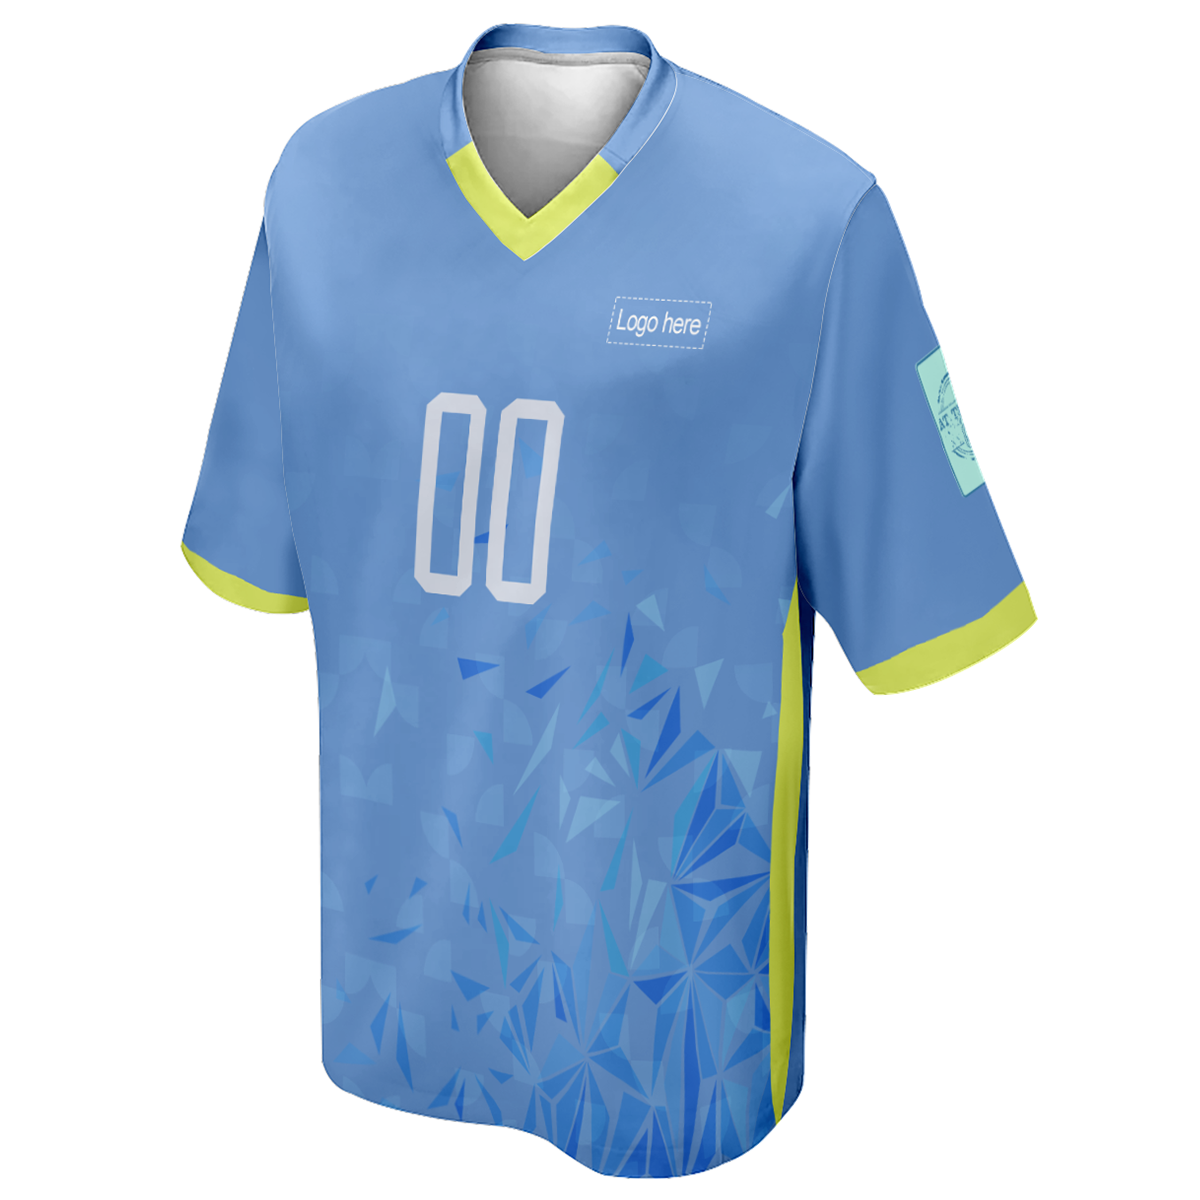 남자의 인쇄된 우루과이 월드컵 로고가 있는 맞춤 축구 유니폼